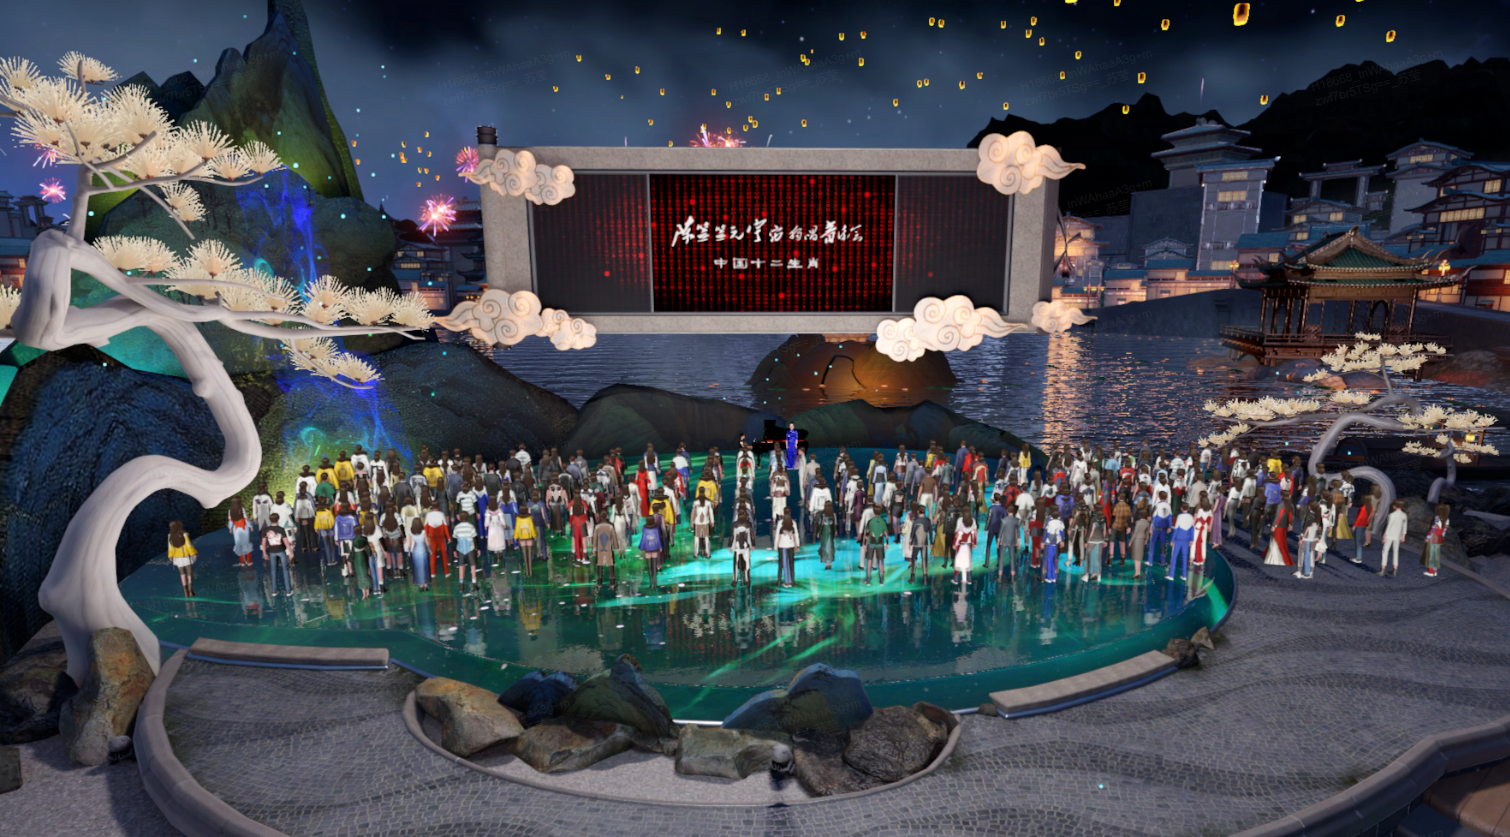 这是一张动漫风格的虚拟场景图，展示众多人物聚集在水池旁，背景有建筑物与烟花，整体气氛庆祝而祥和。